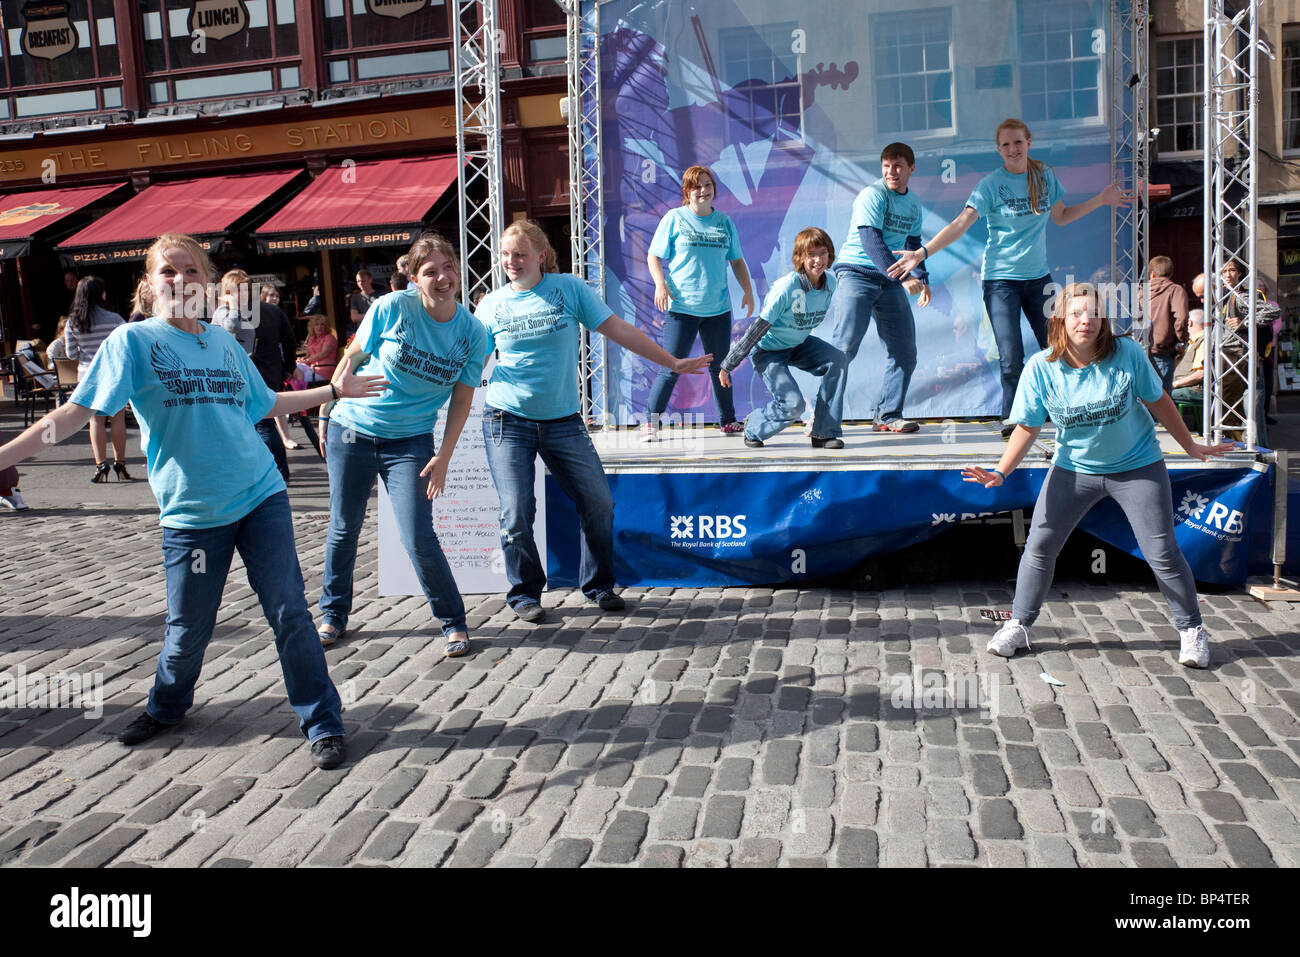 Les adolescents américains faisant la promotion de leur drame 'esprit planeur', dans le Royal Mile/High Street dans le cadre du Festival Fringe d'Édimbourg Banque D'Images